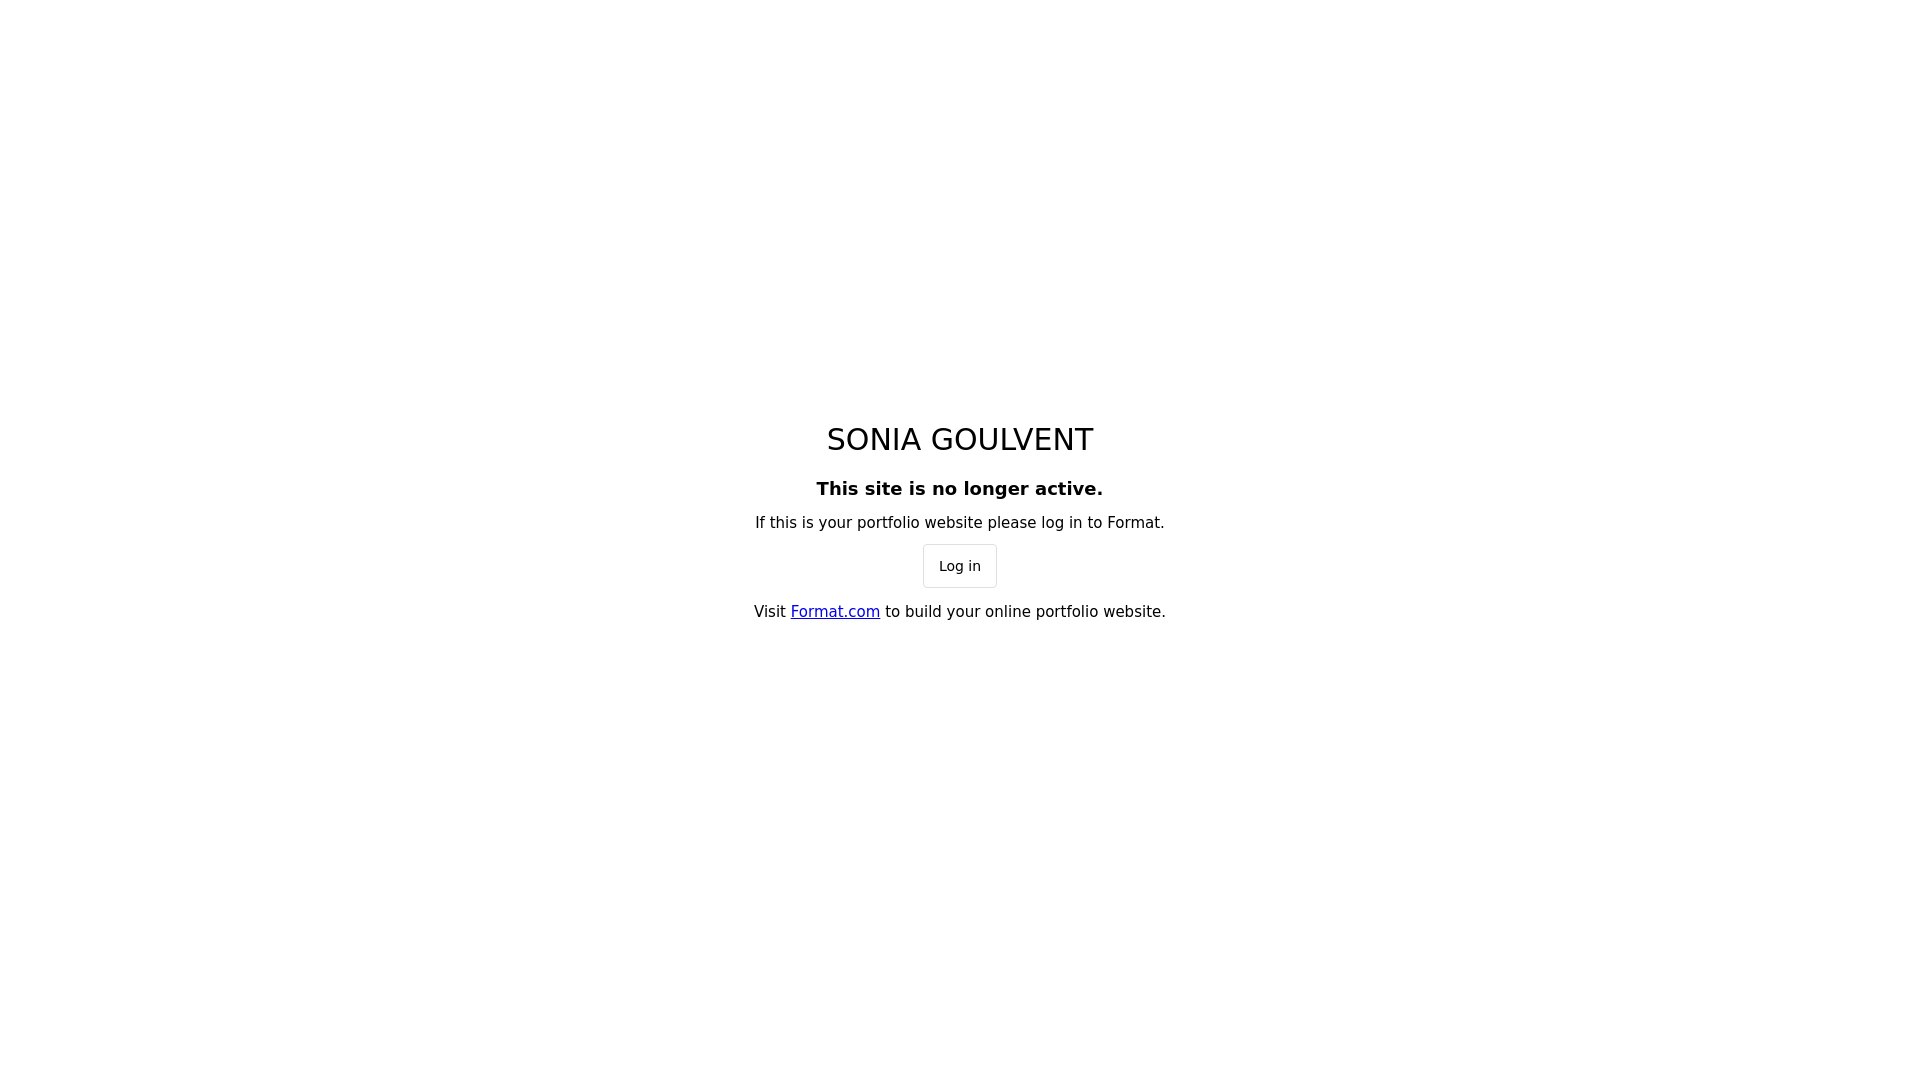 Sonia Goulvent desktop